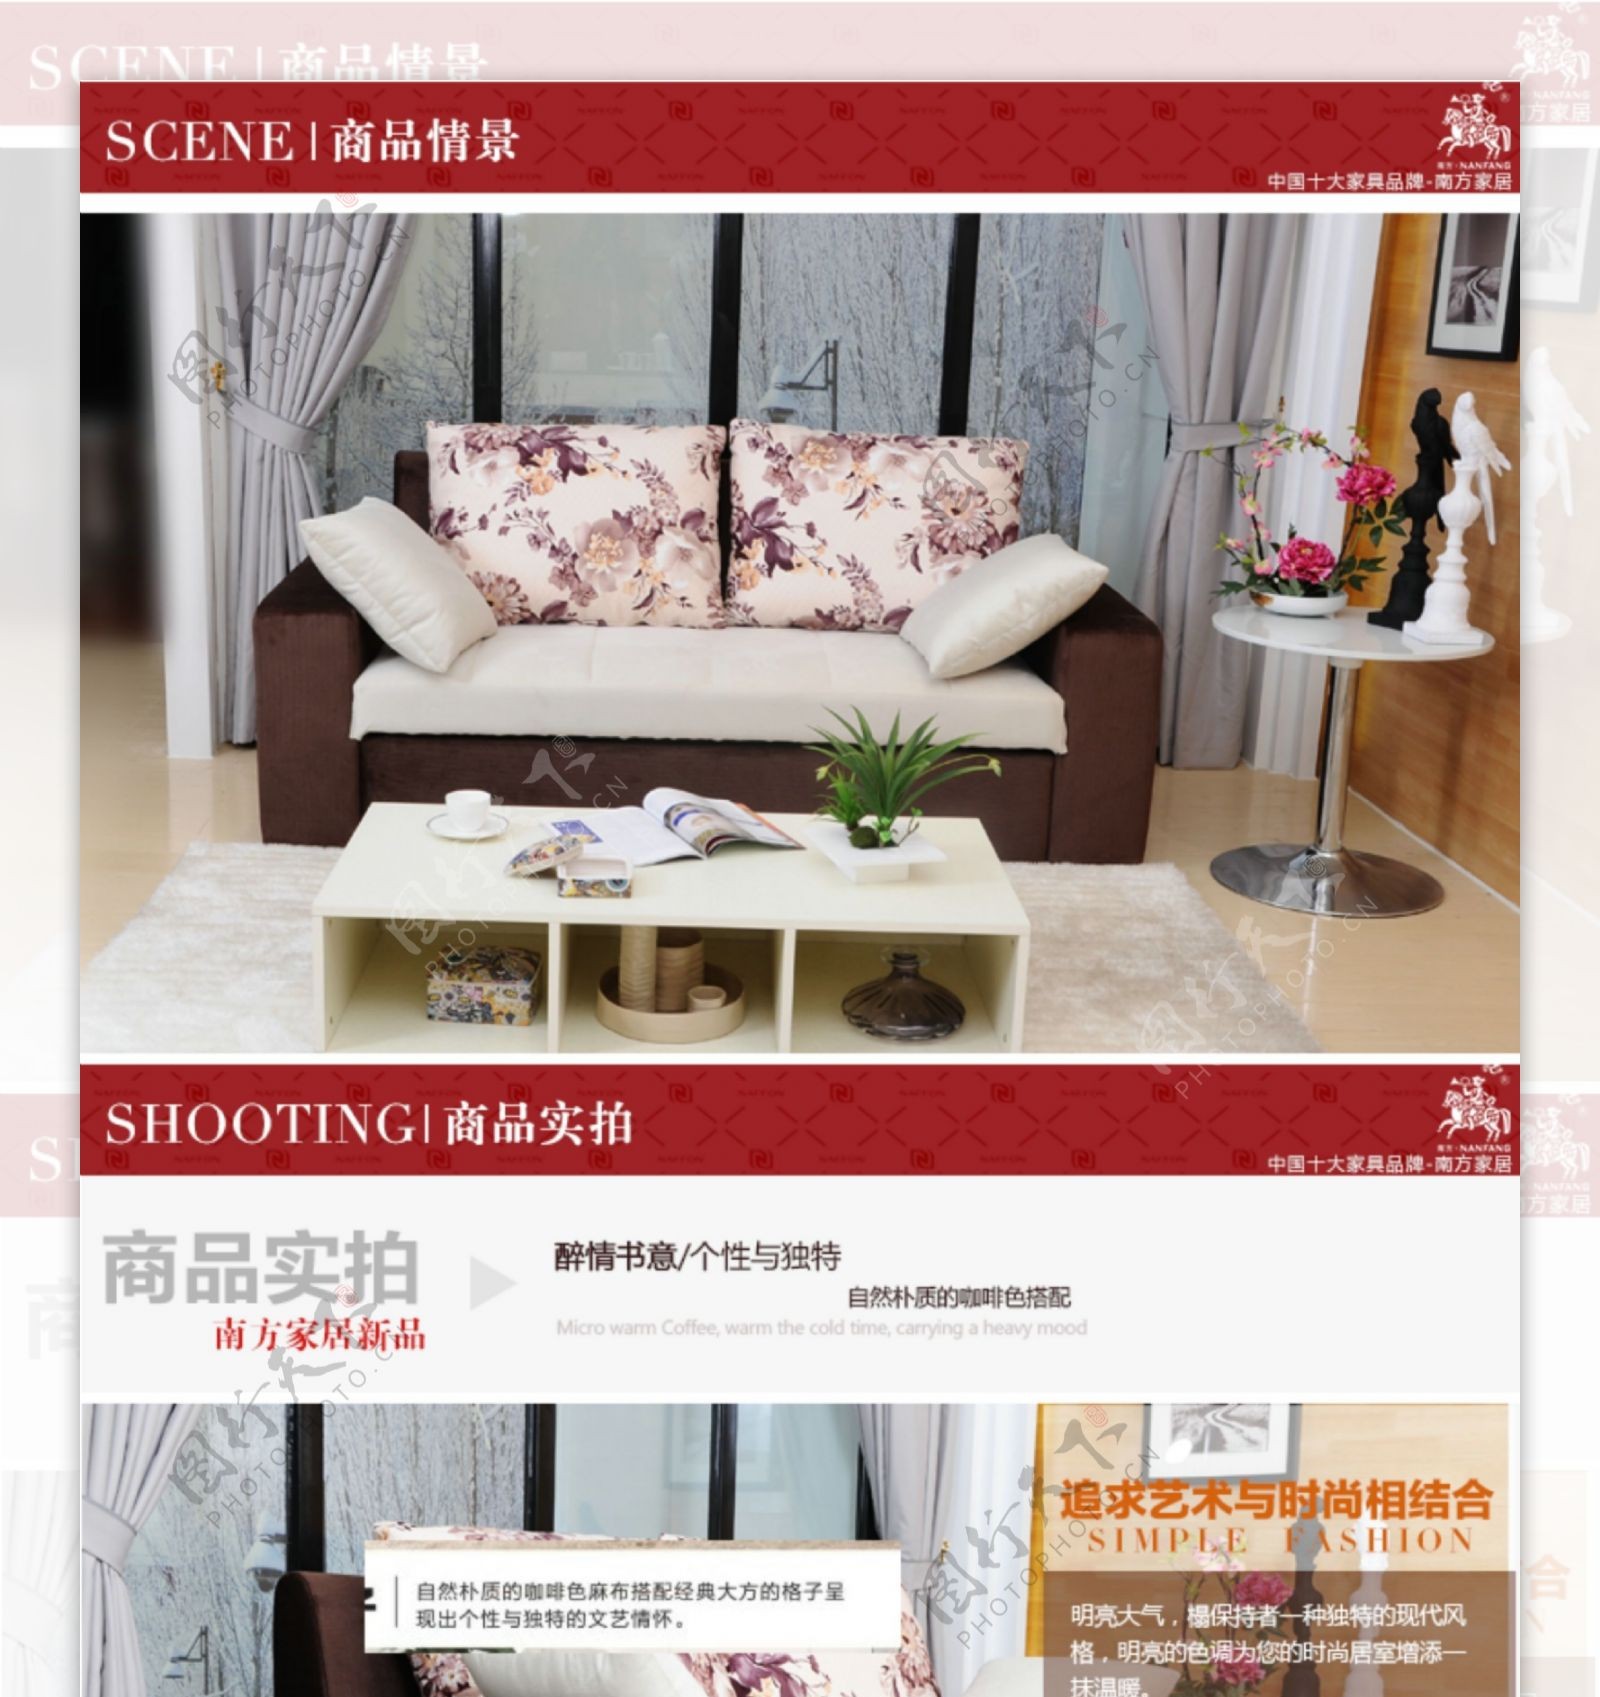 布艺沙发淘宝详情页设计时尚多功能简约红色